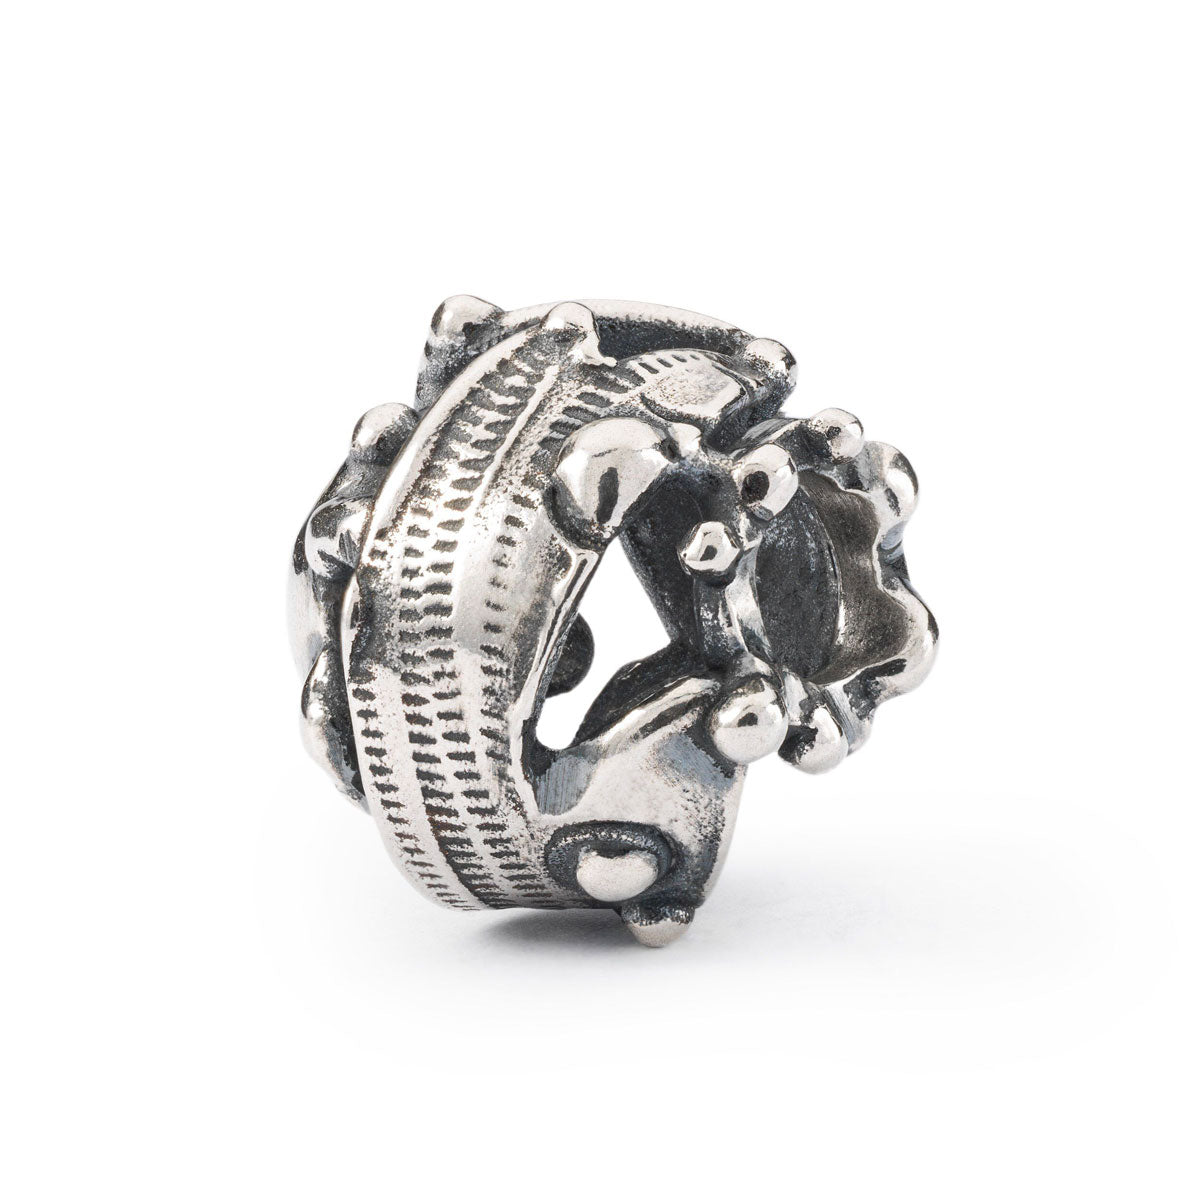 Terra Promessa è un beads in argento 925 creato da Trollbeads e ha una forma tonda.